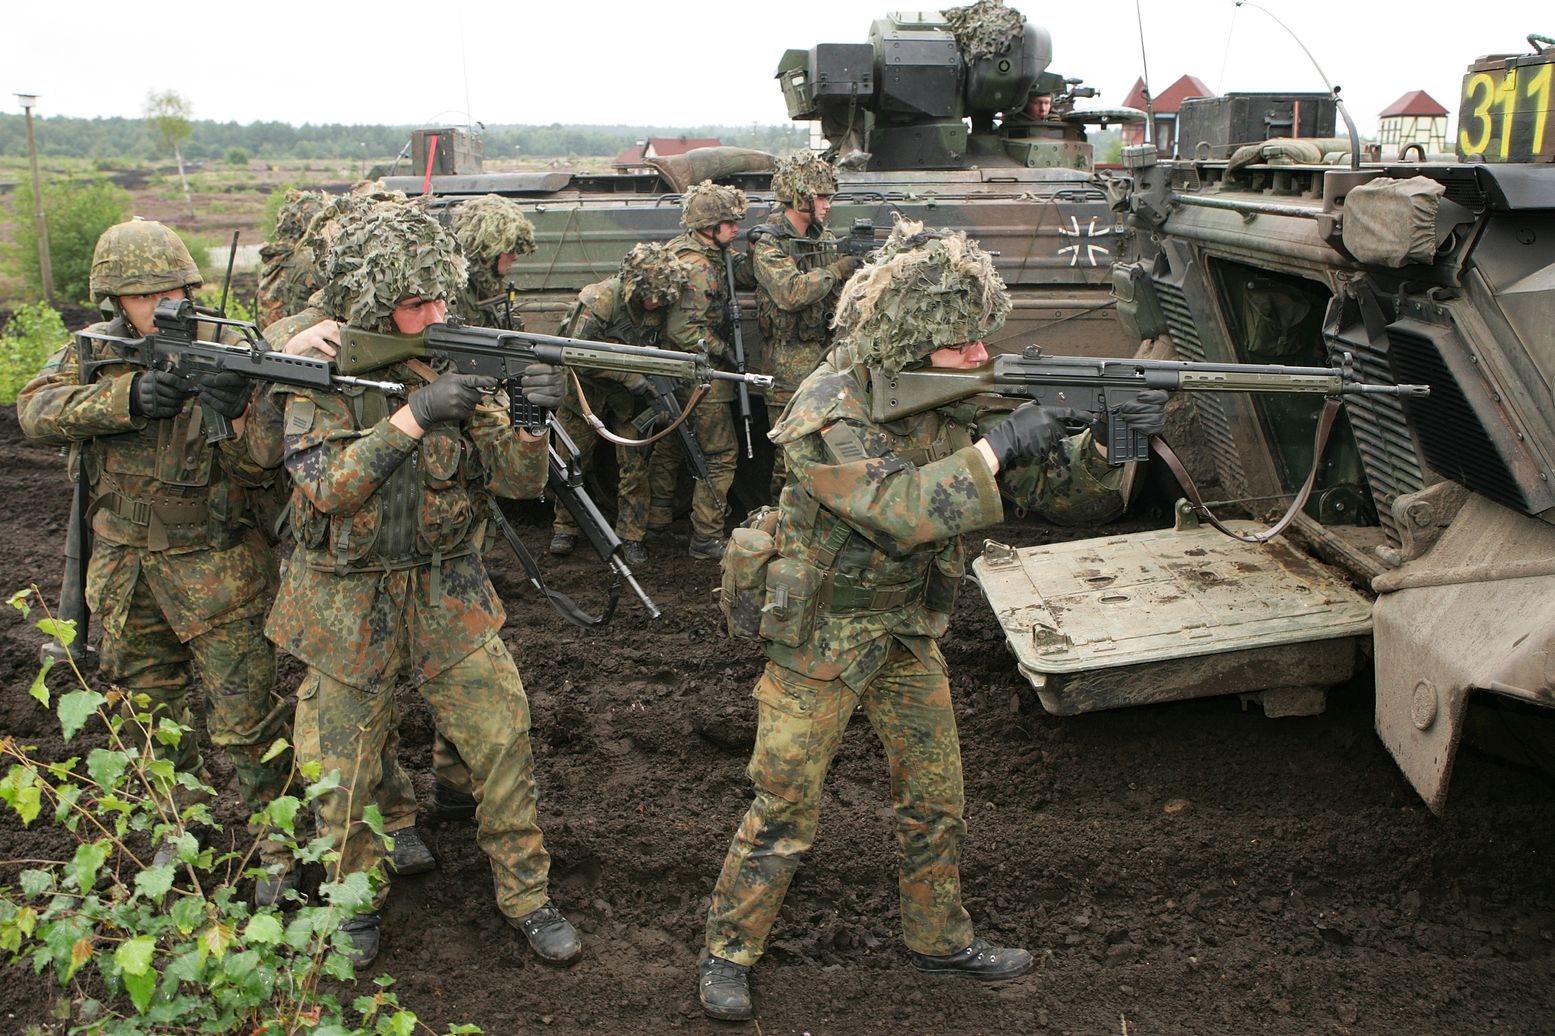 Meet the Powerful German G3 Assault Rifle | The National Interest